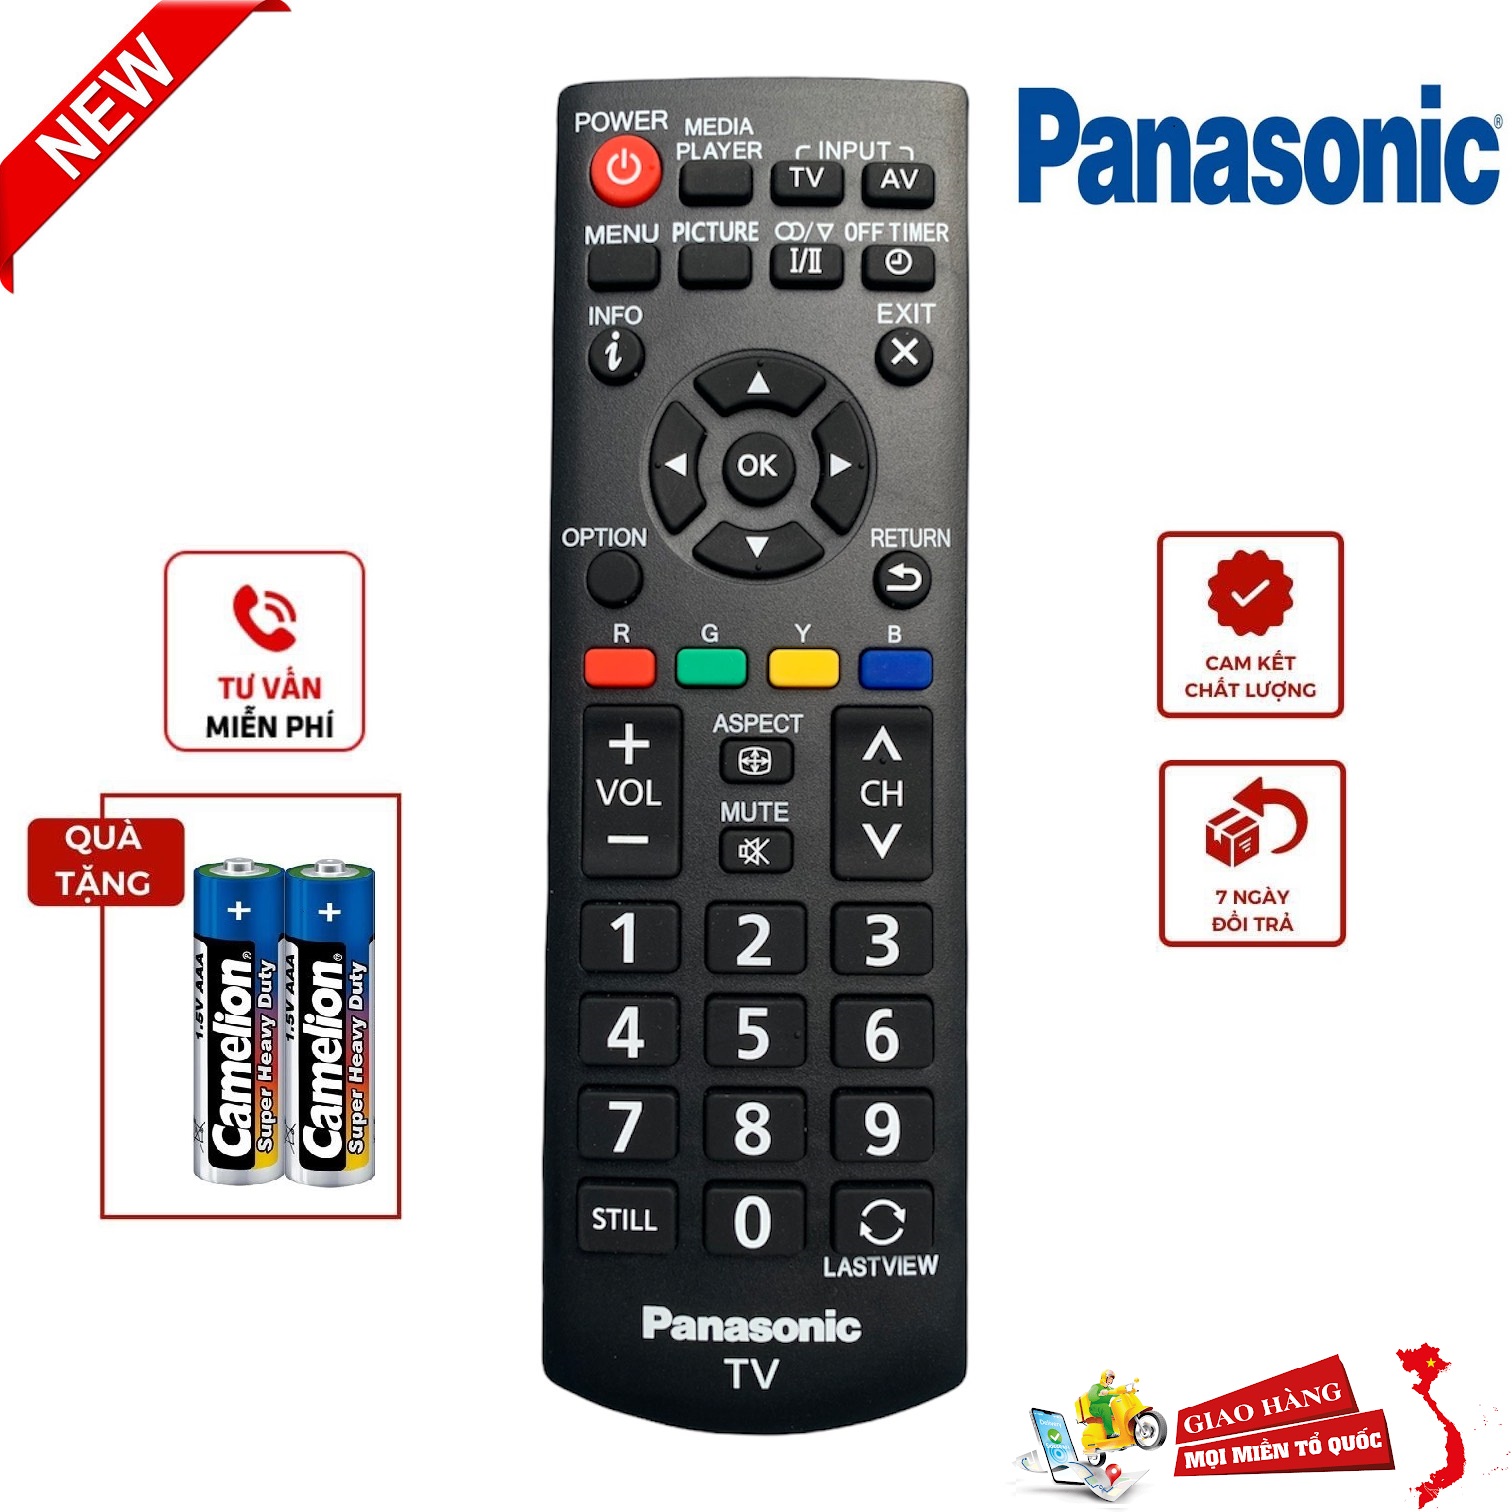 Điều khiển tivi Panasonic N2QAYB000823 Hàng chính hãng  BH 6 tháng, tặng